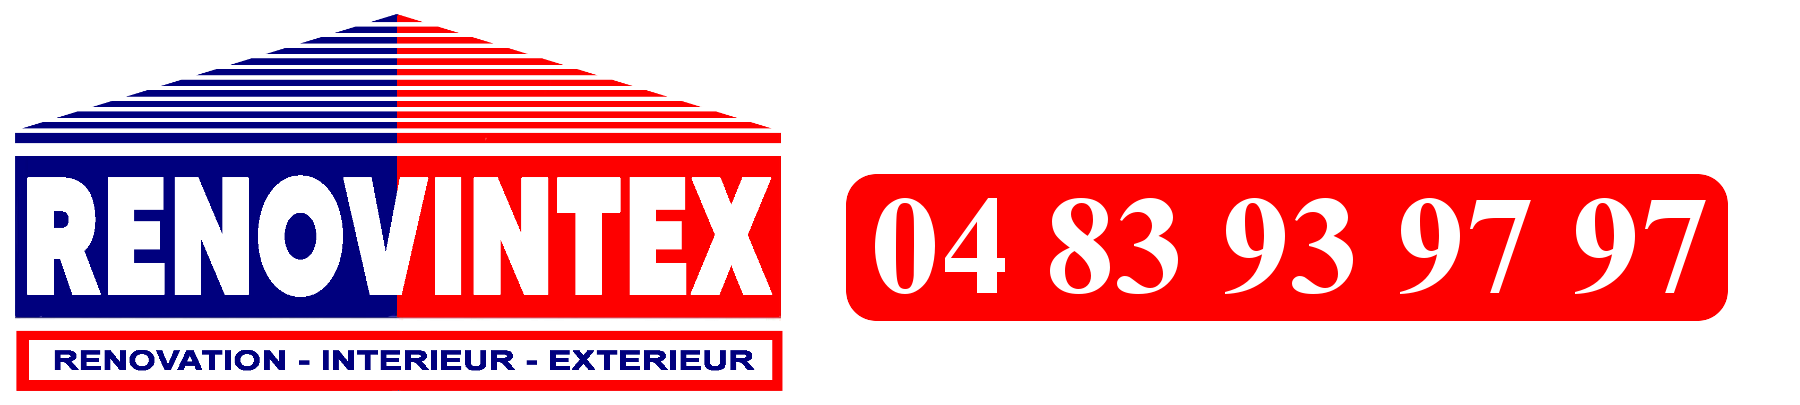 Logo RENOVINTEX et téléphone